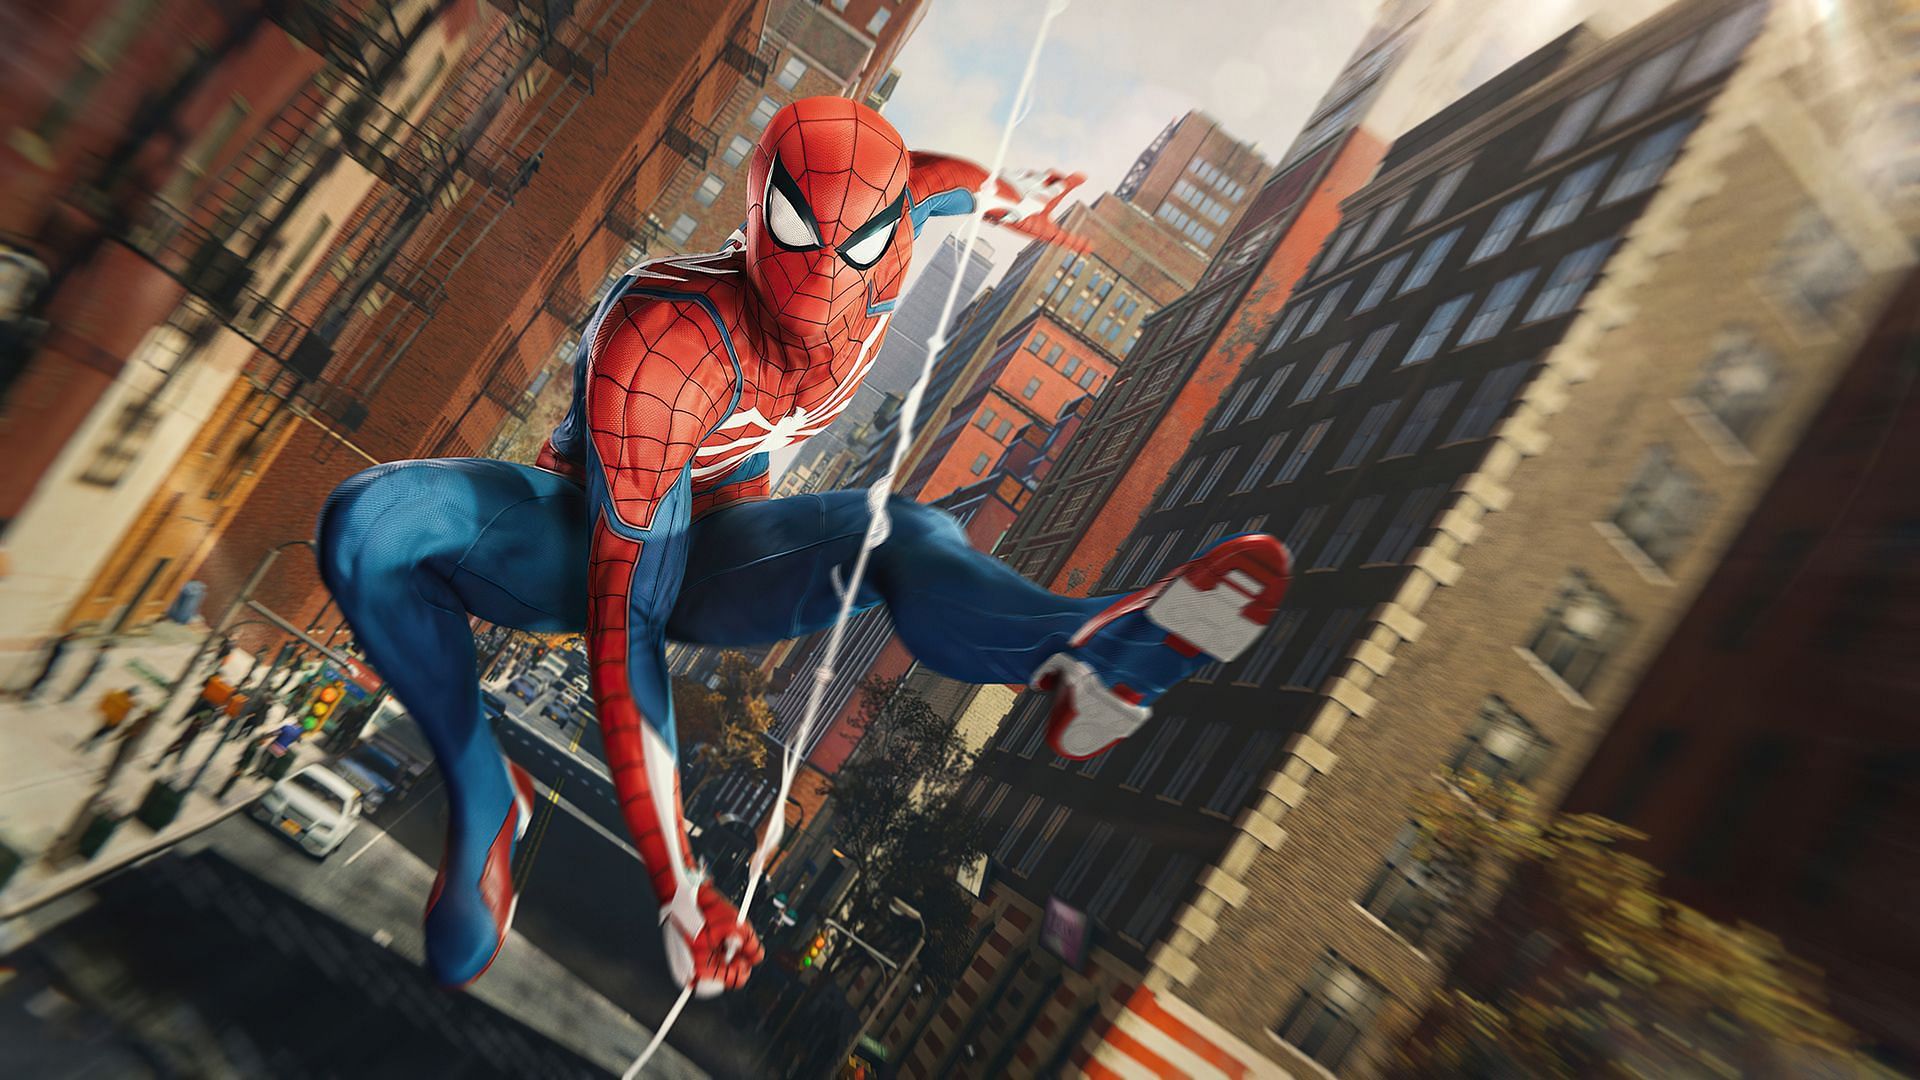 Spider-Man webswinging in Marvel's Spider-Man (Image Credit: Insomniac Games/Marvel/PlayStation Studios)